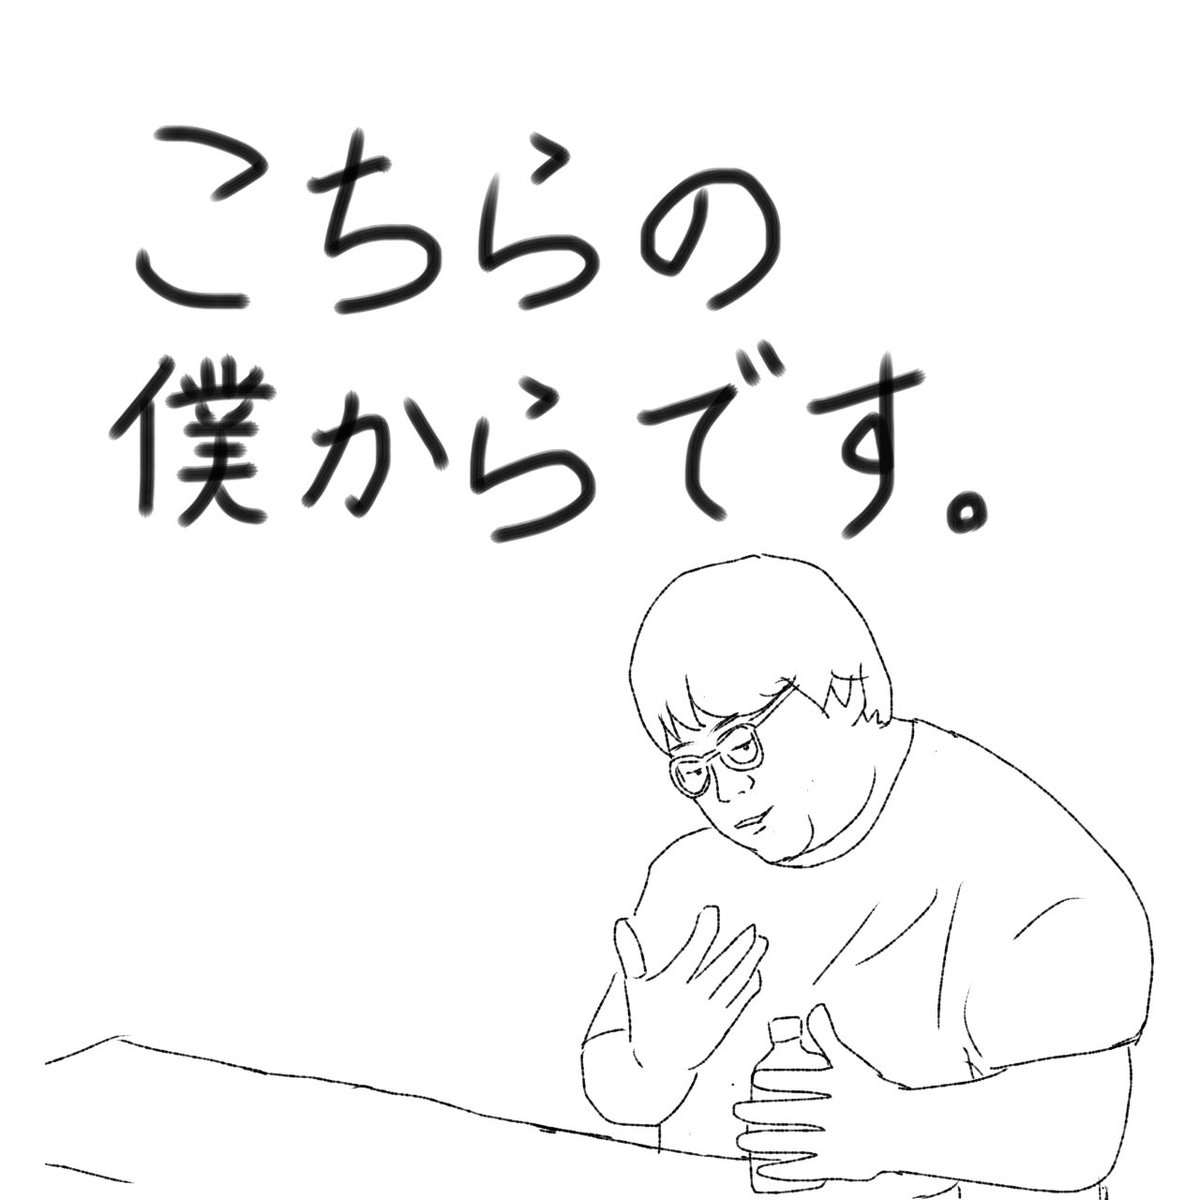 タイムマシーン3号関さんの
「こちらの僕からです」が好きすぎて
ついつい描いてしまった。
(とはいえほぼトレス)